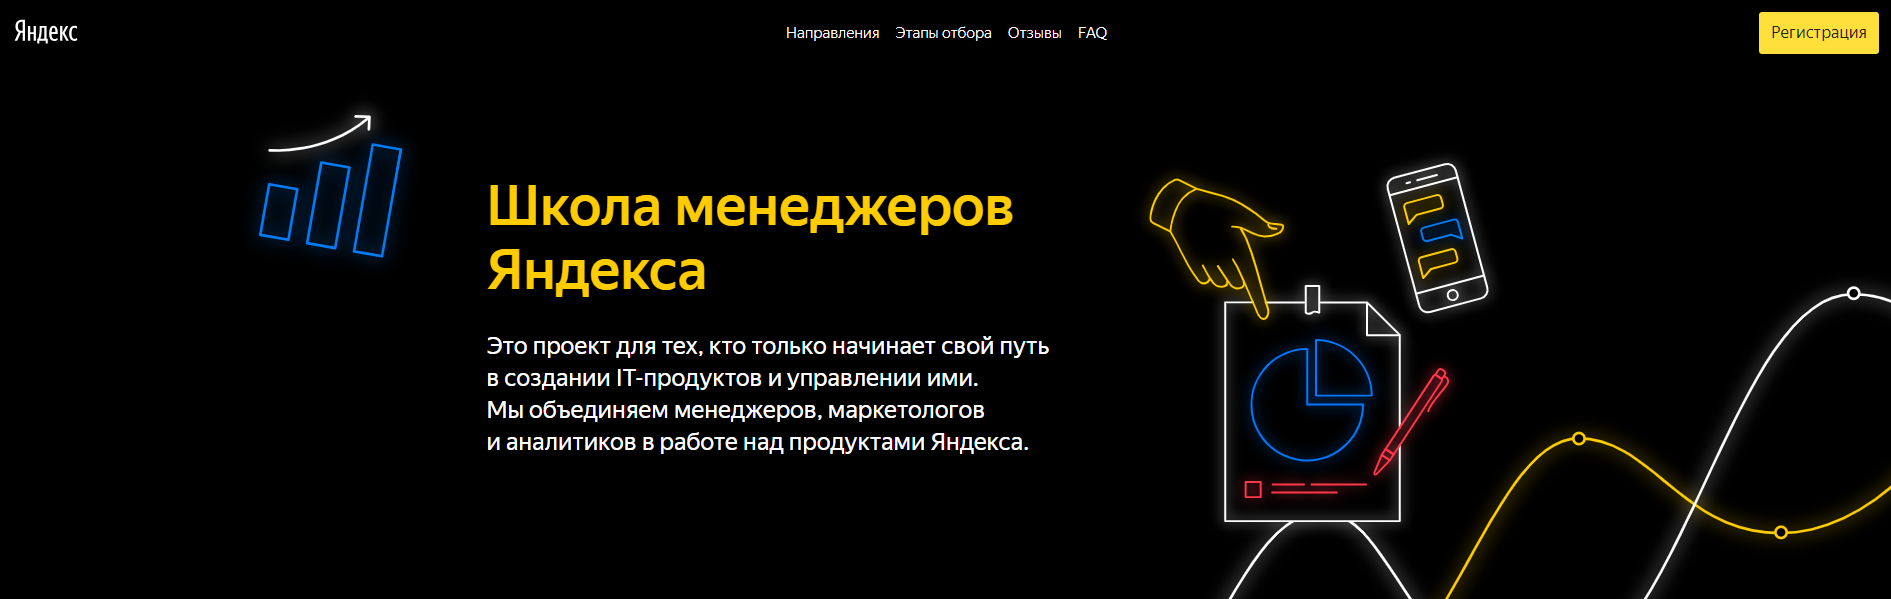 Яндекс приглашает в свою Школу менеджеров